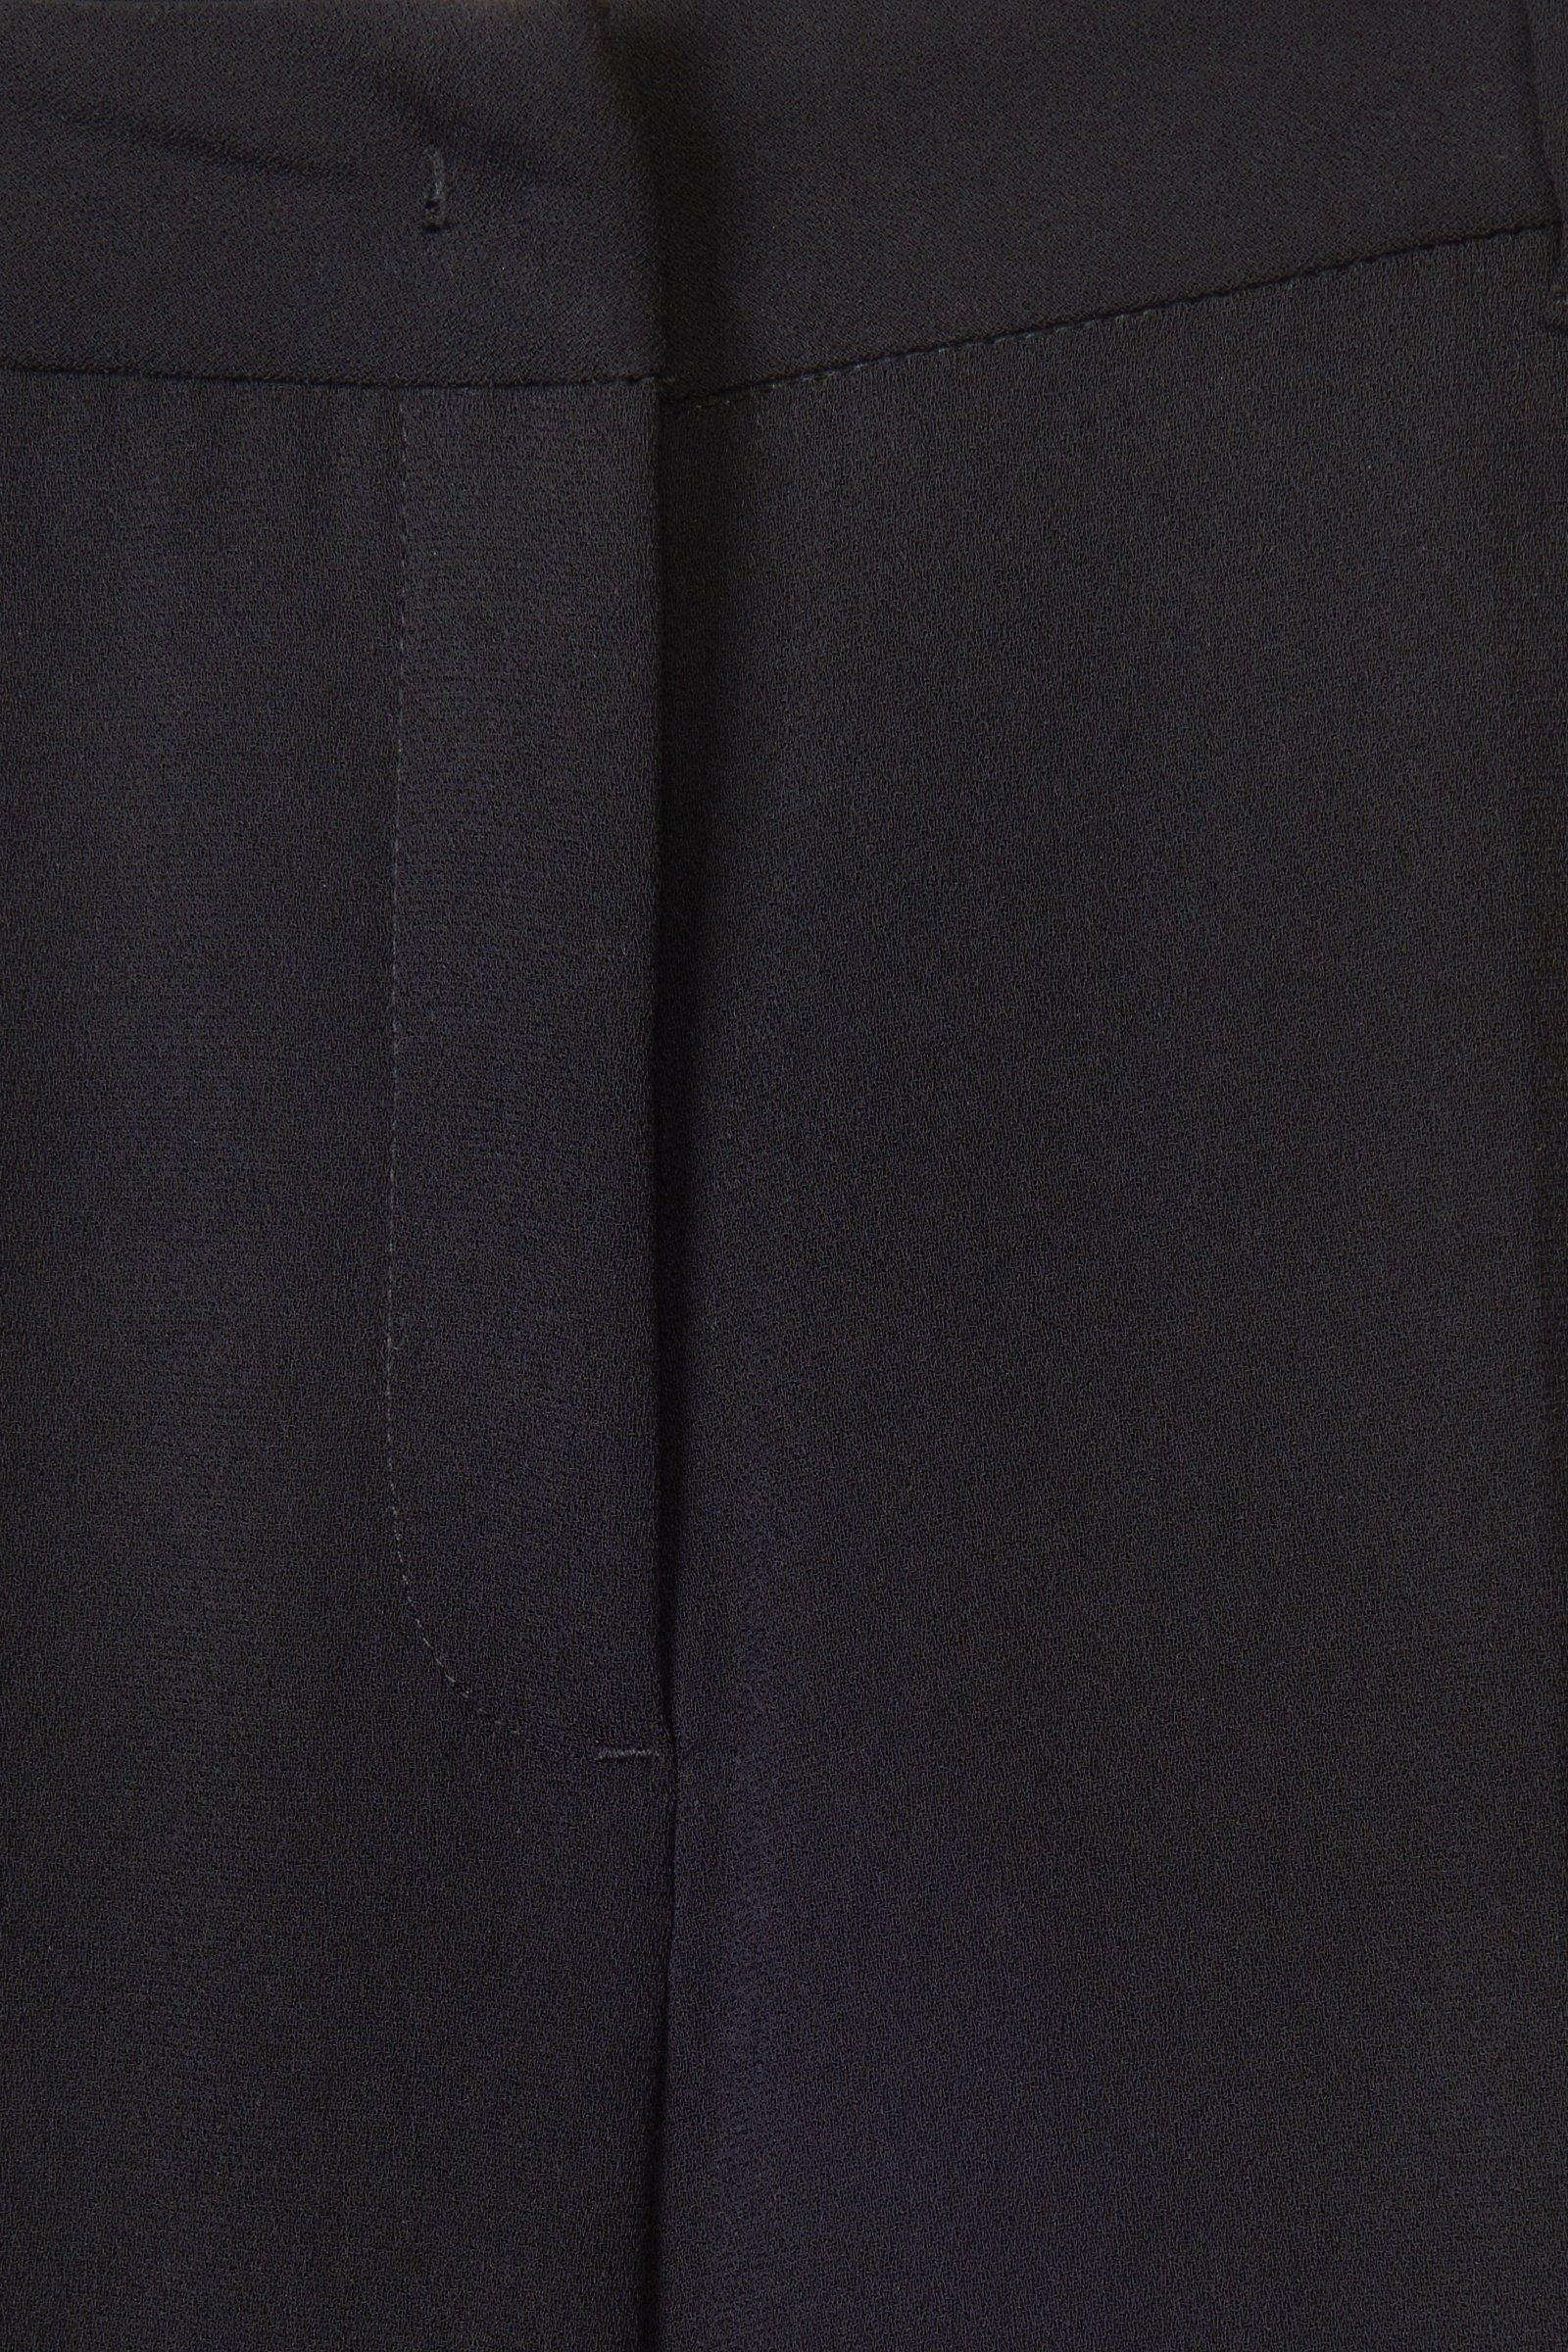 CKS Dames - TONKSA - long trouser - black